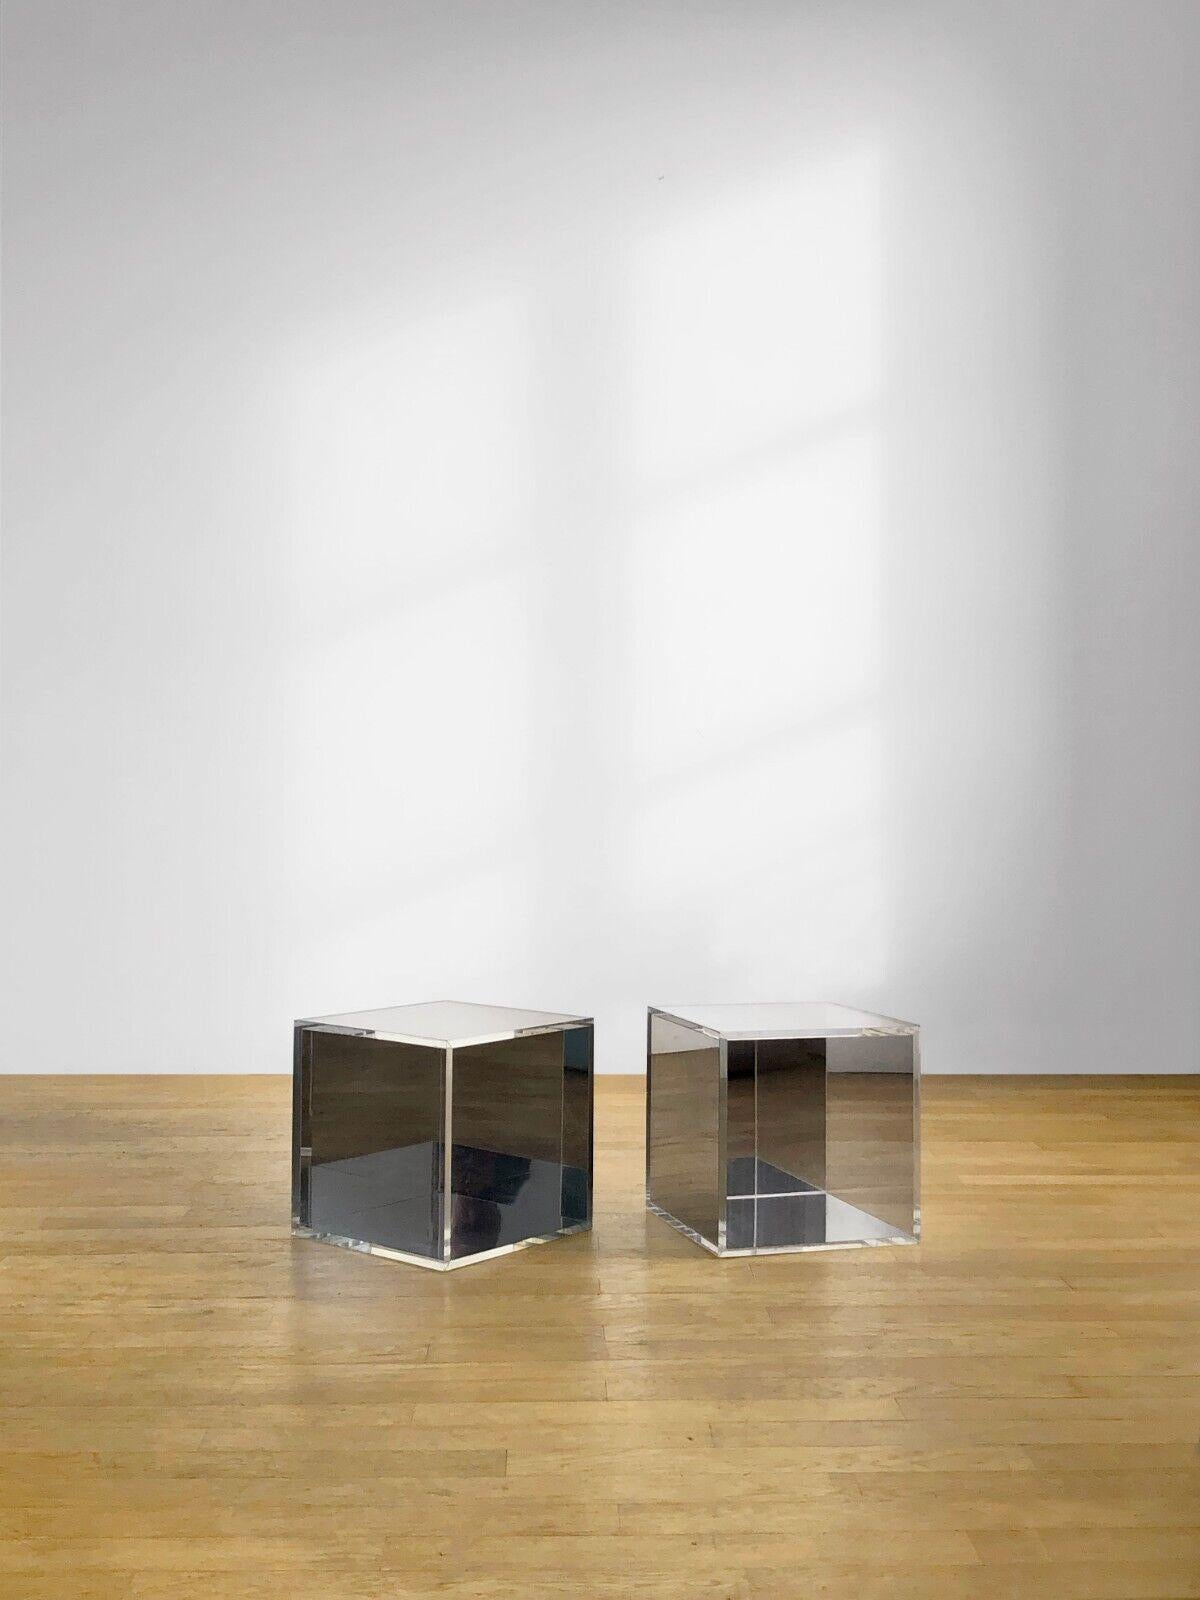 Etonnante paire de tables basses cubiques, tables de chevet ou tables d'appoint, Post-Moderniste, Pop, Shabby-Chic, structures cubiques en épaisses bandes de plexiglas, avec 3 faces transparentes et 3 faces en miroir, créant une infinité d'effets